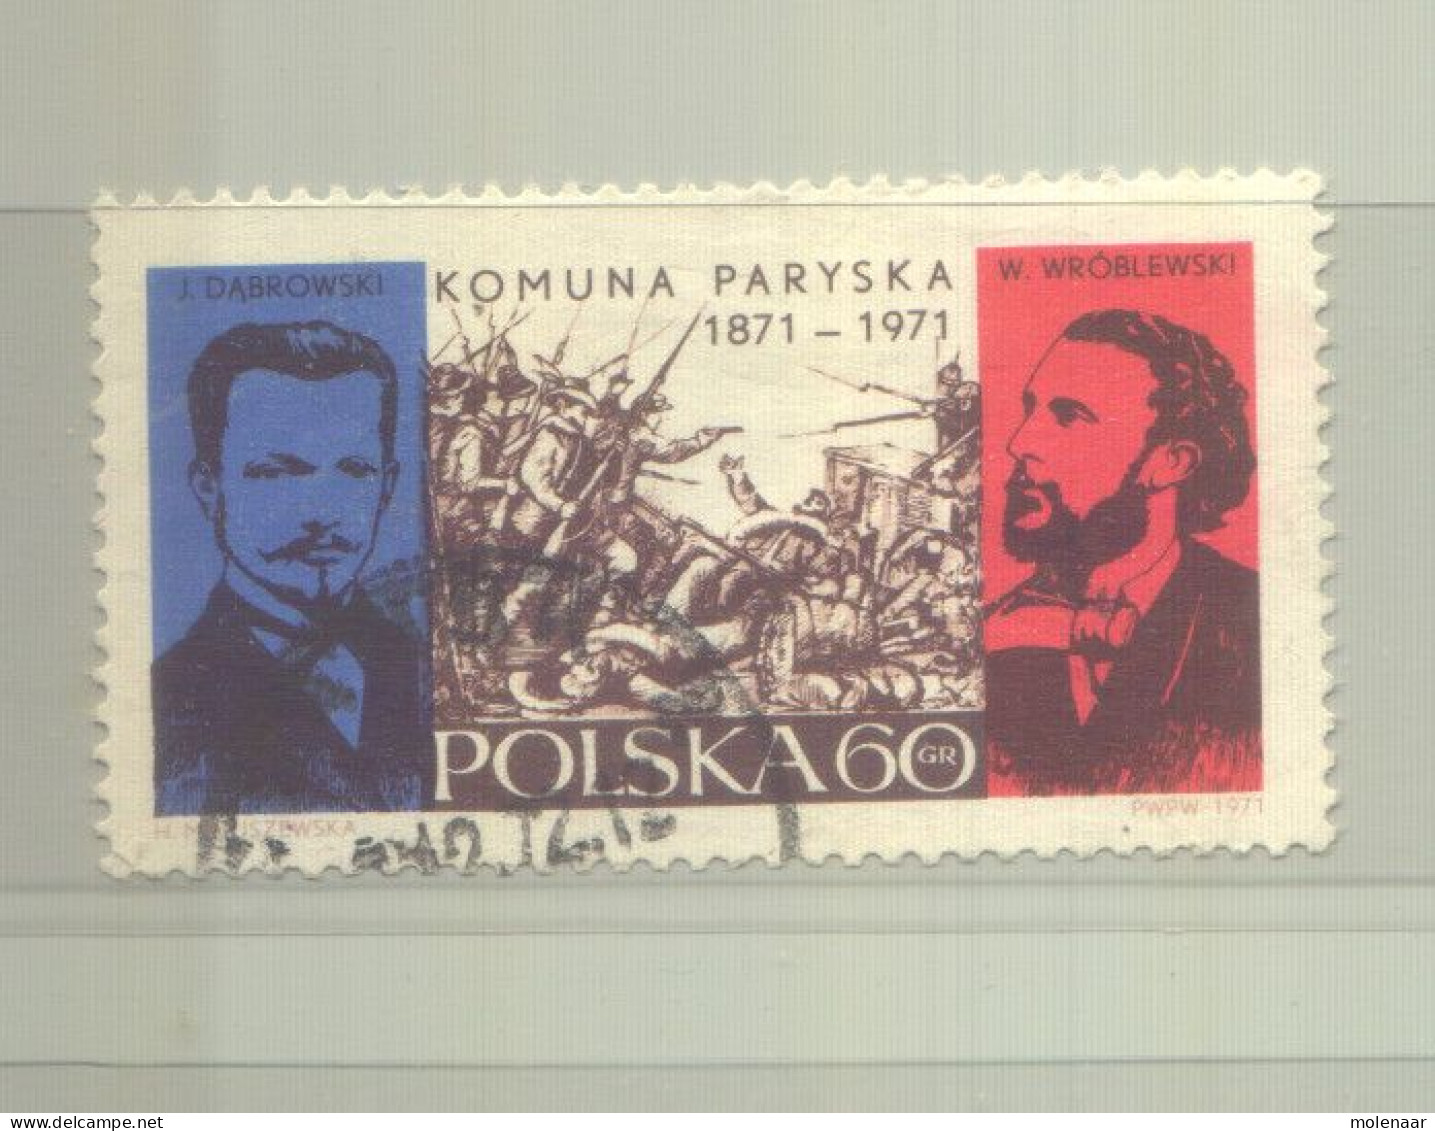 Postzegels > Europa > Polen > 1944-.... Republiek > 1981-90 > Gebruikt 2055 (12191) - Oblitérés